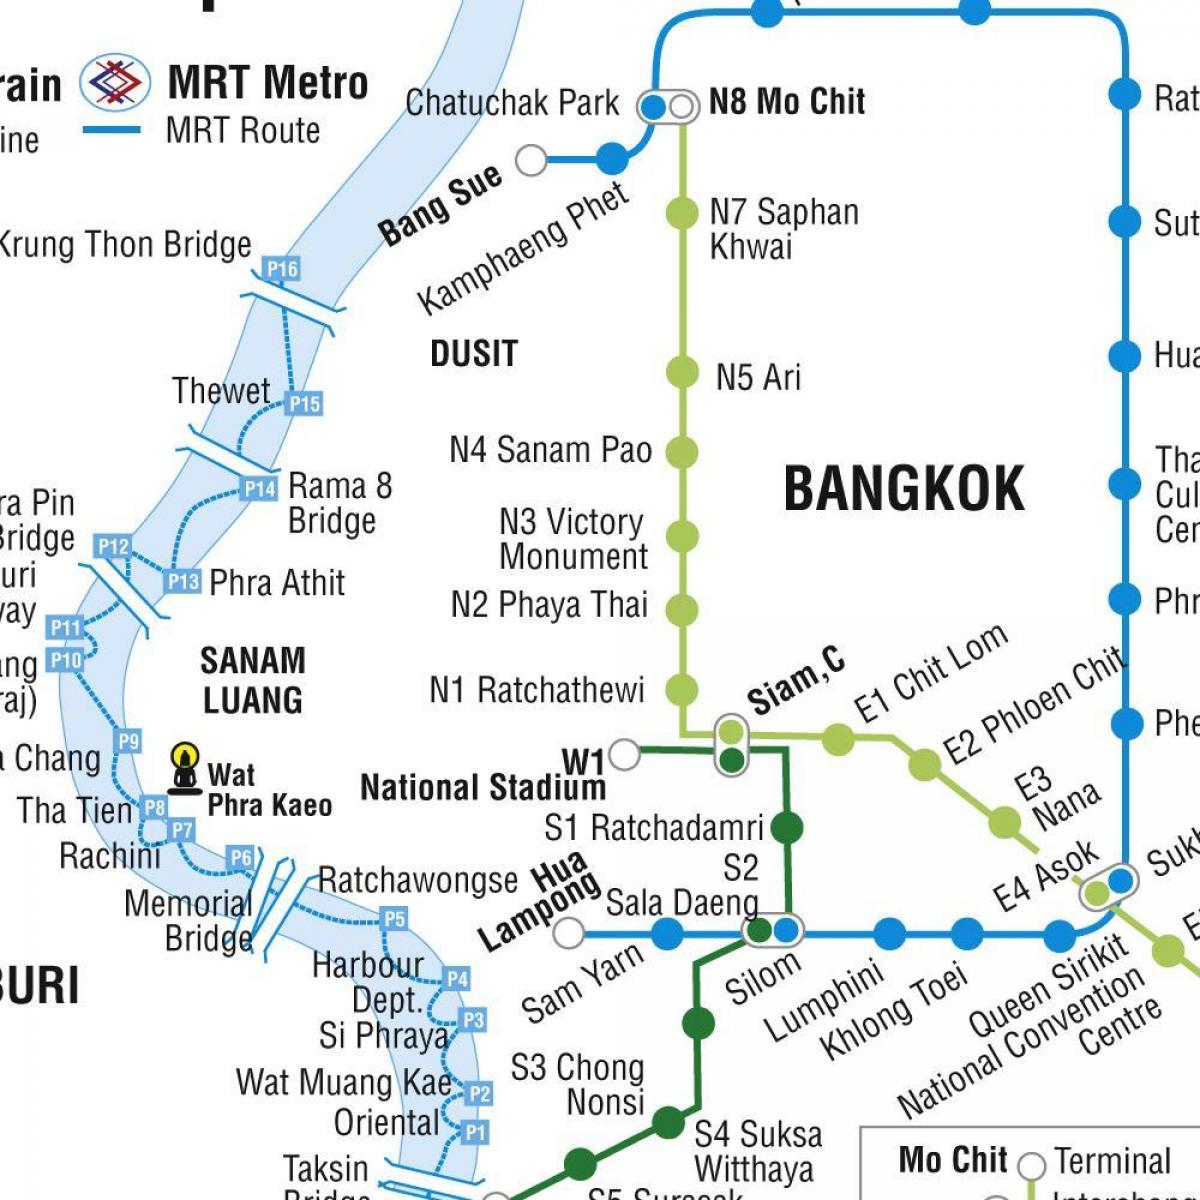 map of bangkok metro and skytrain